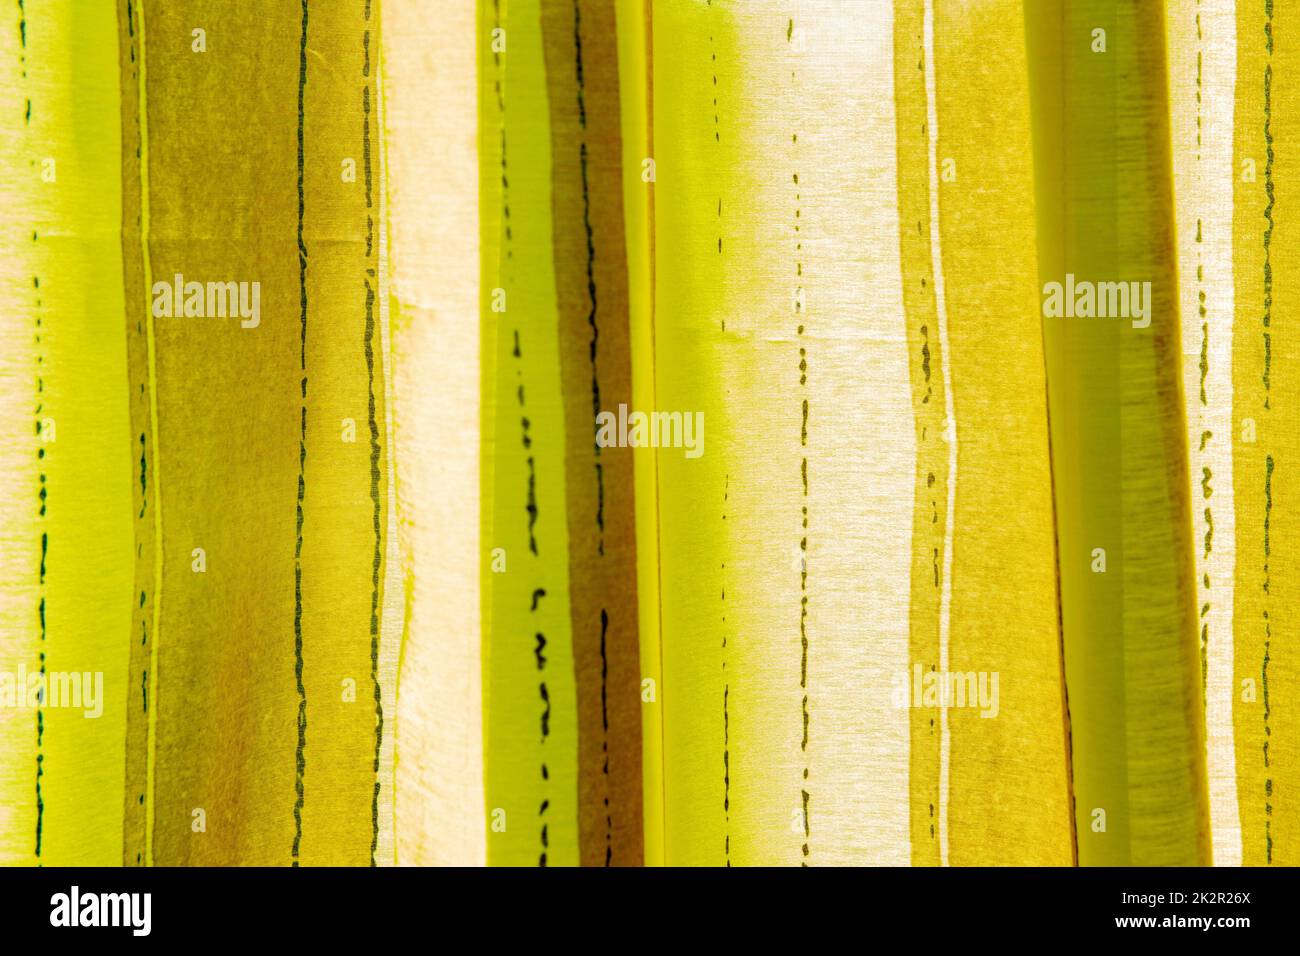 Grüngelb-weiße Hintergrundstruktur mit abstraktem Muster – helltransparentes Seidengewebe aus feiner Strickmode für Design, Web oder Präsentation. Vorlage. Stockfoto